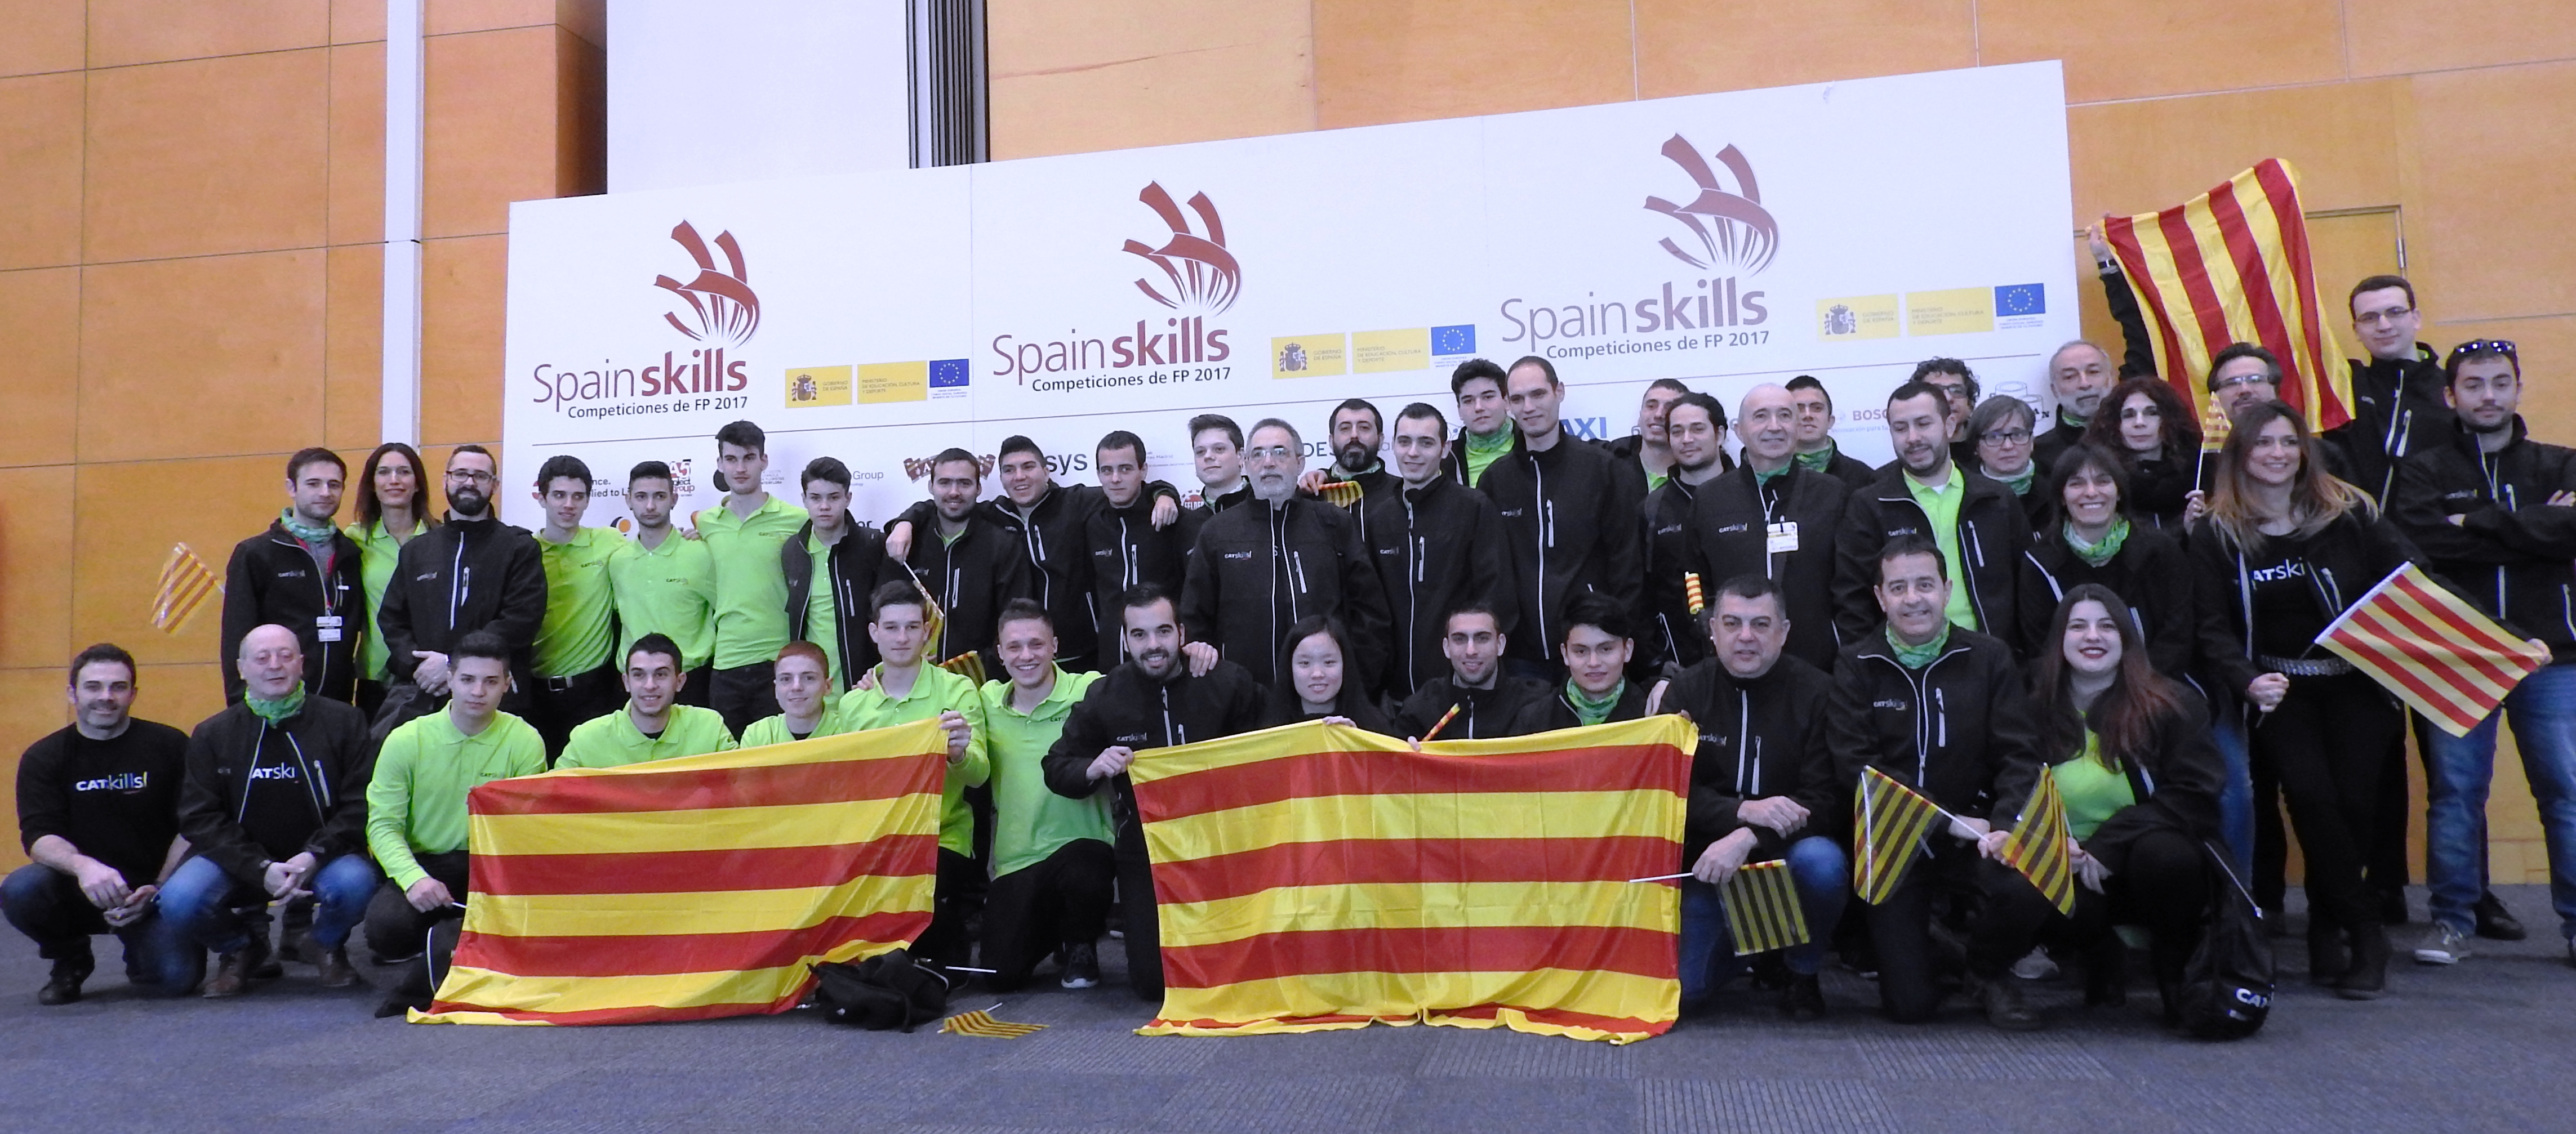 La delegació catalana a l'Spainskills